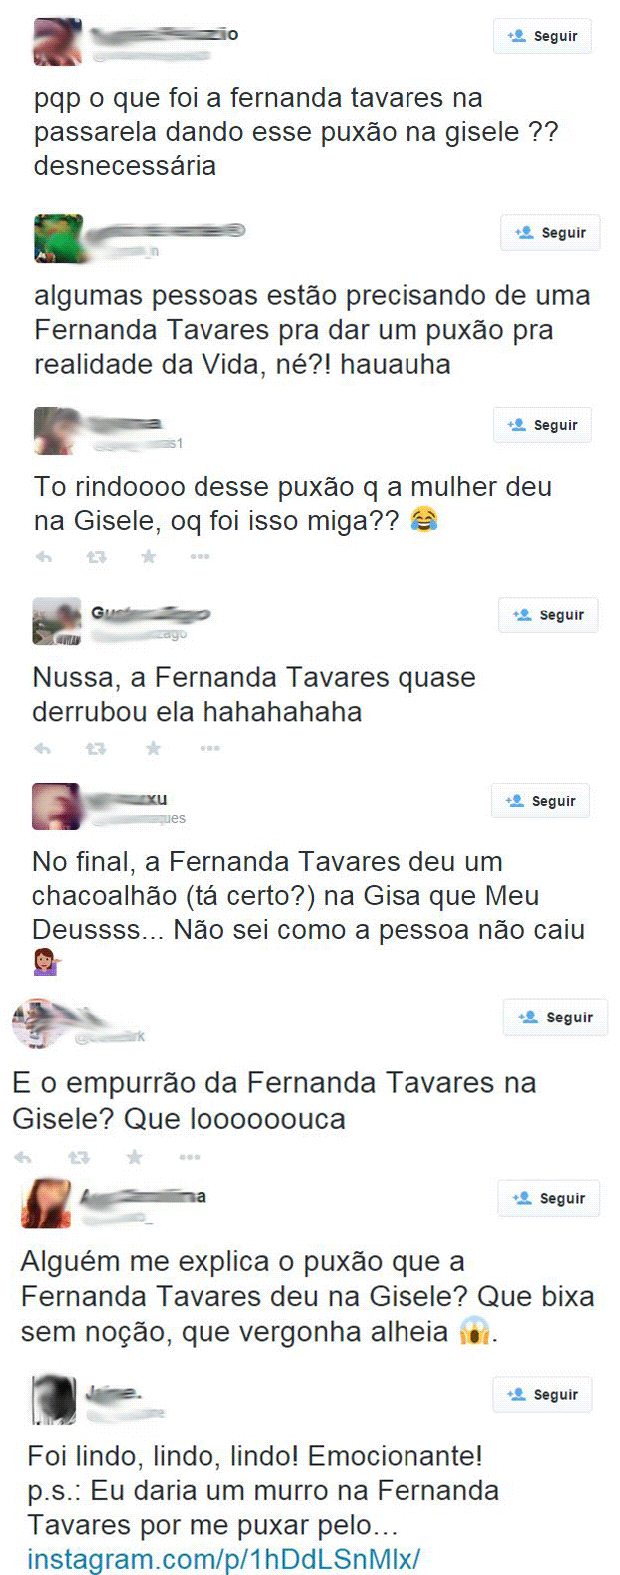 Leitores comentam puxão de Fernanda Tavares em Gisele (Foto: Twitter / Reprodução)